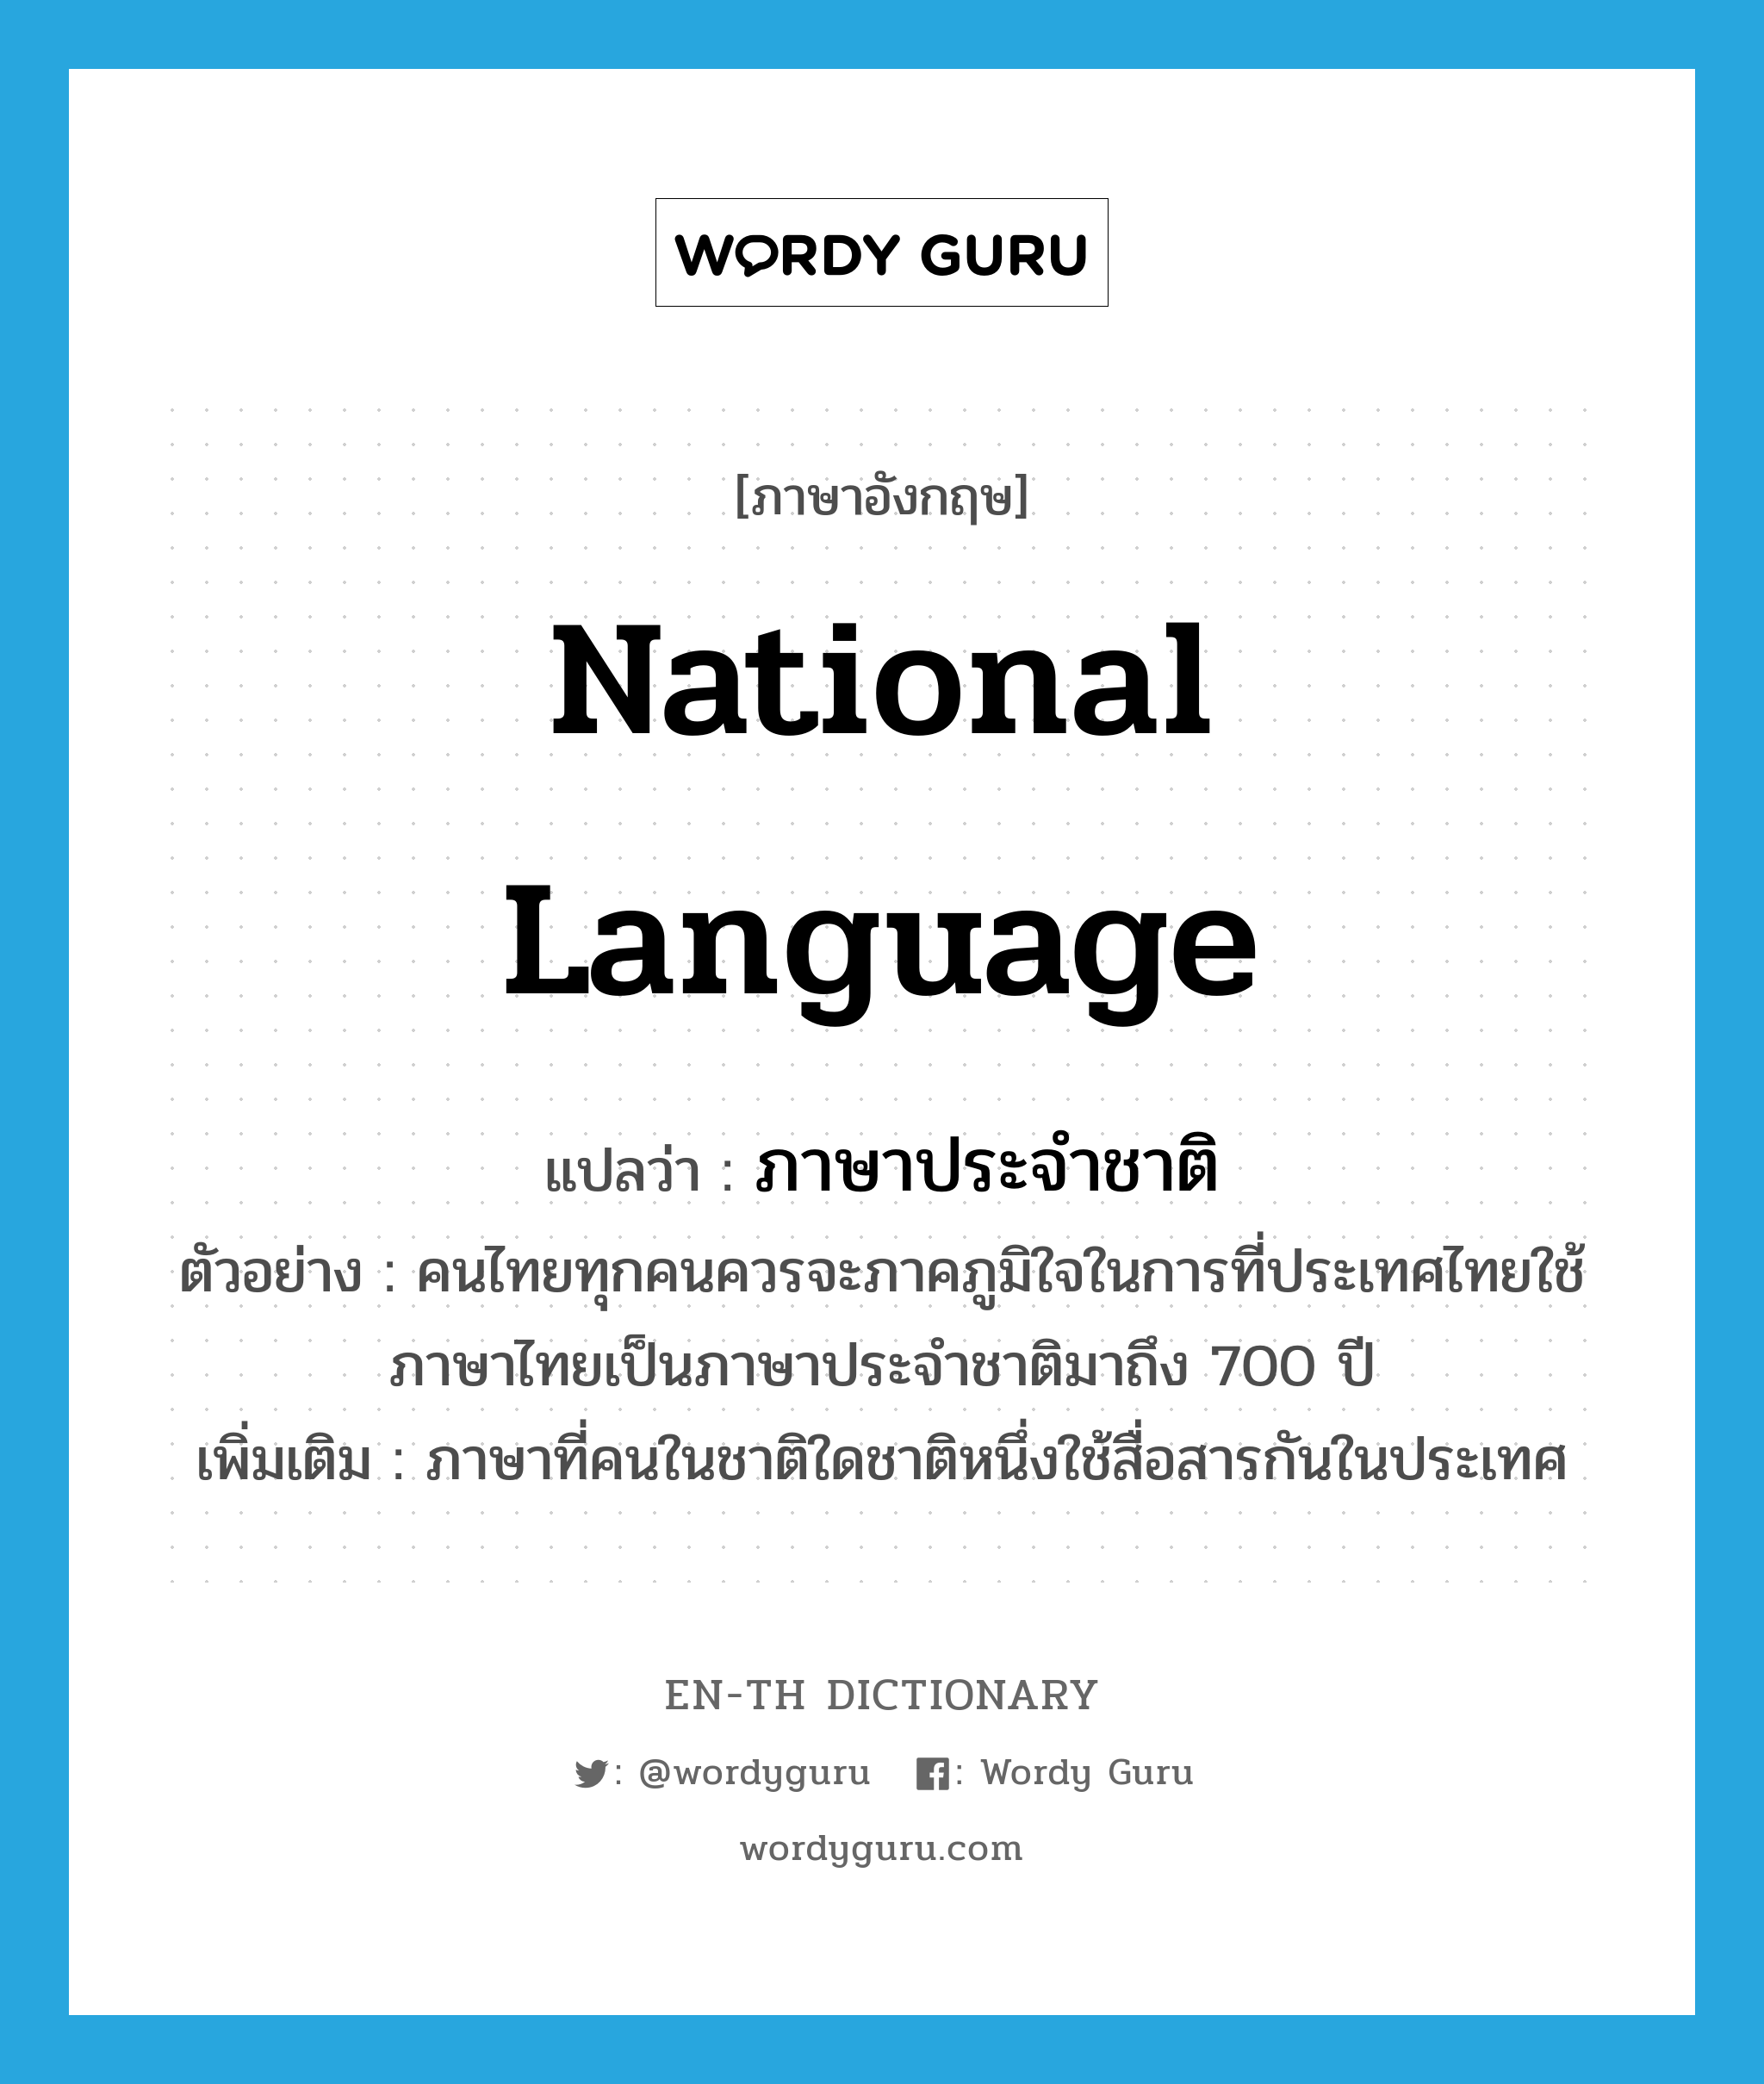 national language แปลว่า?, คำศัพท์ภาษาอังกฤษ national language แปลว่า ภาษาประจำชาติ ประเภท N ตัวอย่าง คนไทยทุกคนควรจะภาคภูมิใจในการที่ประเทศไทยใช้ภาษาไทยเป็นภาษาประจำชาติมาถึง 700 ปี เพิ่มเติม ภาษาที่คนในชาติใดชาติหนึ่งใช้สื่อสารกันในประเทศ หมวด N